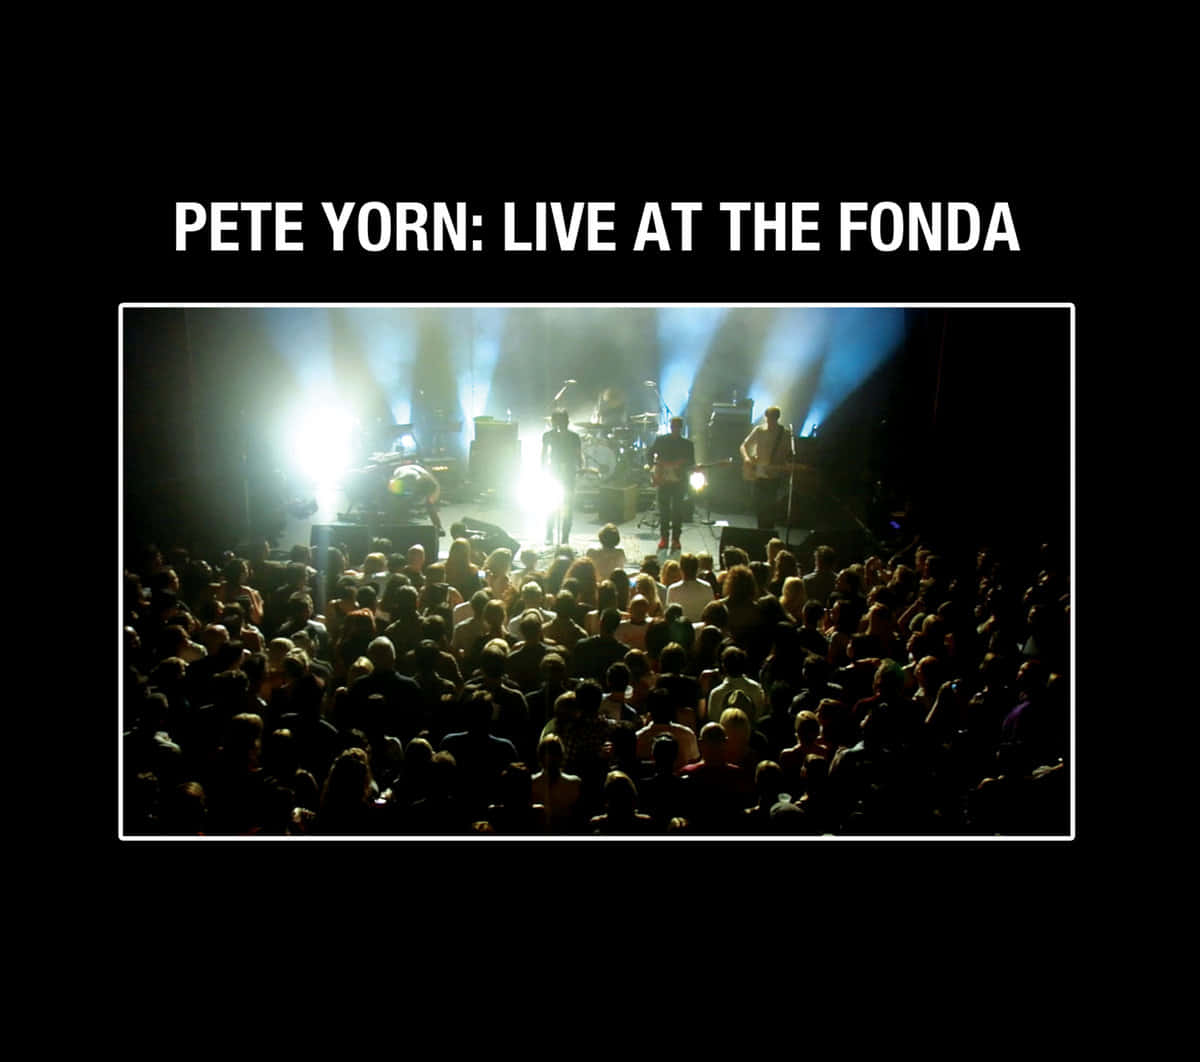 American Singer Pete Yorn Concert Background Illustration